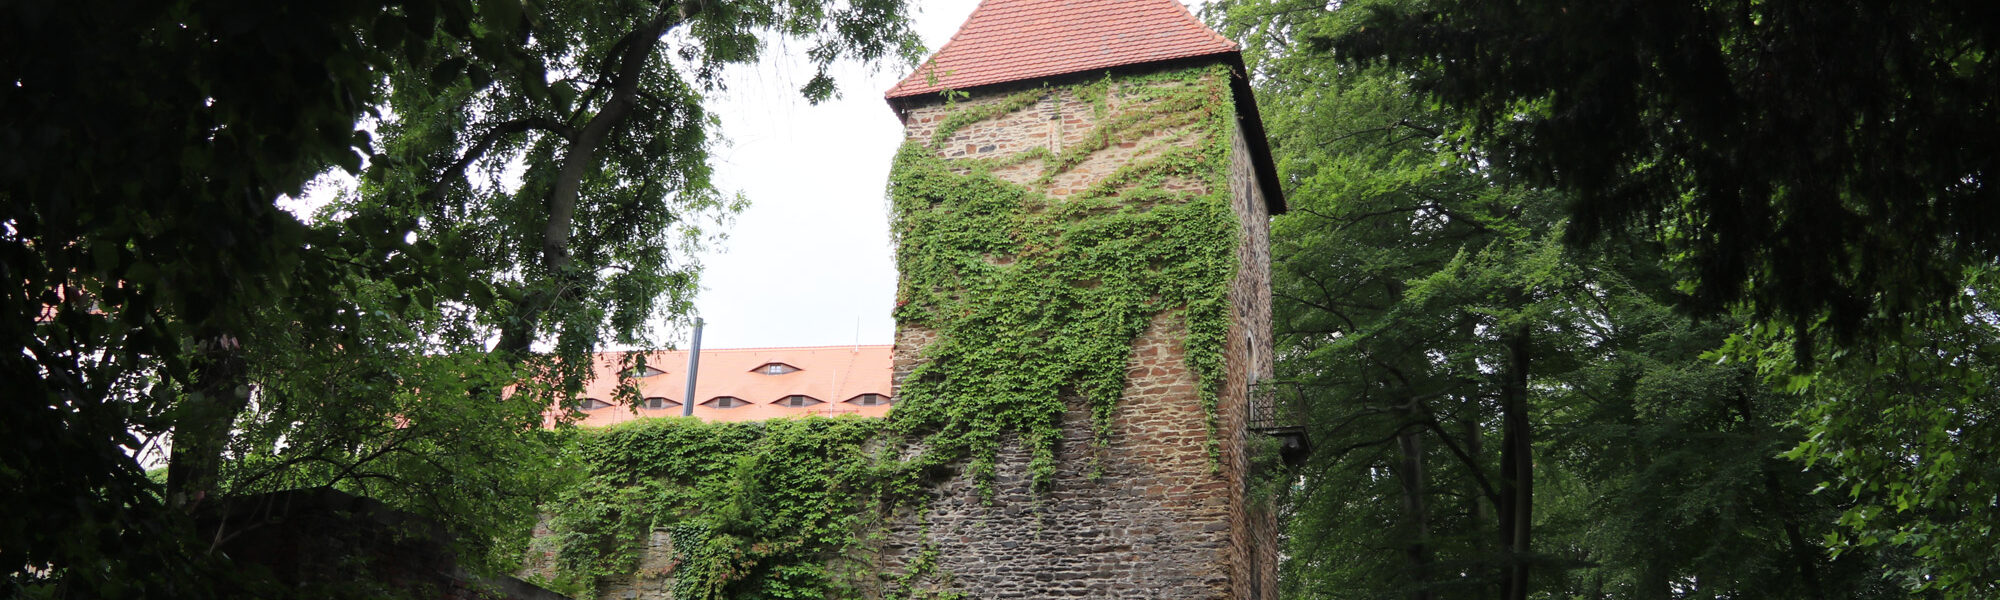 Altschlossturm - Freiberg - Duitsland